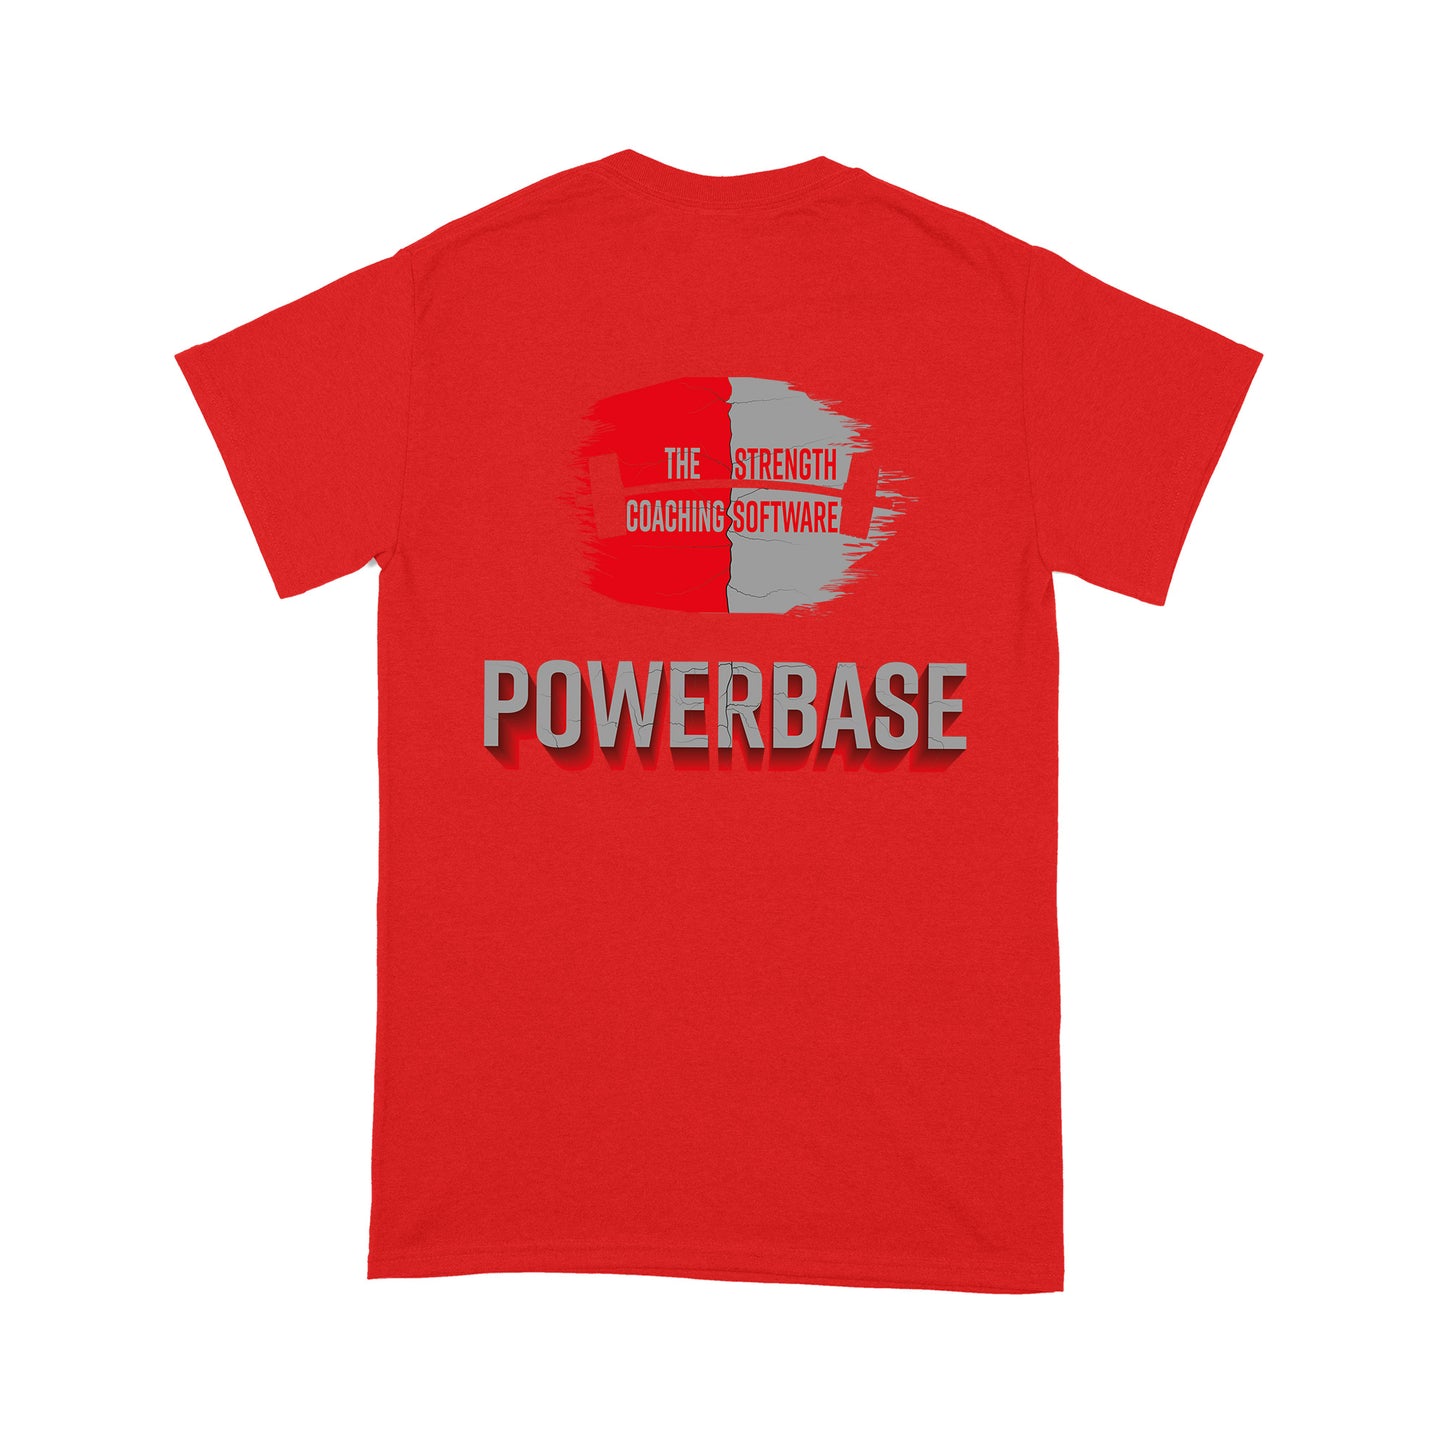 POWERBASE Shirt 2.0